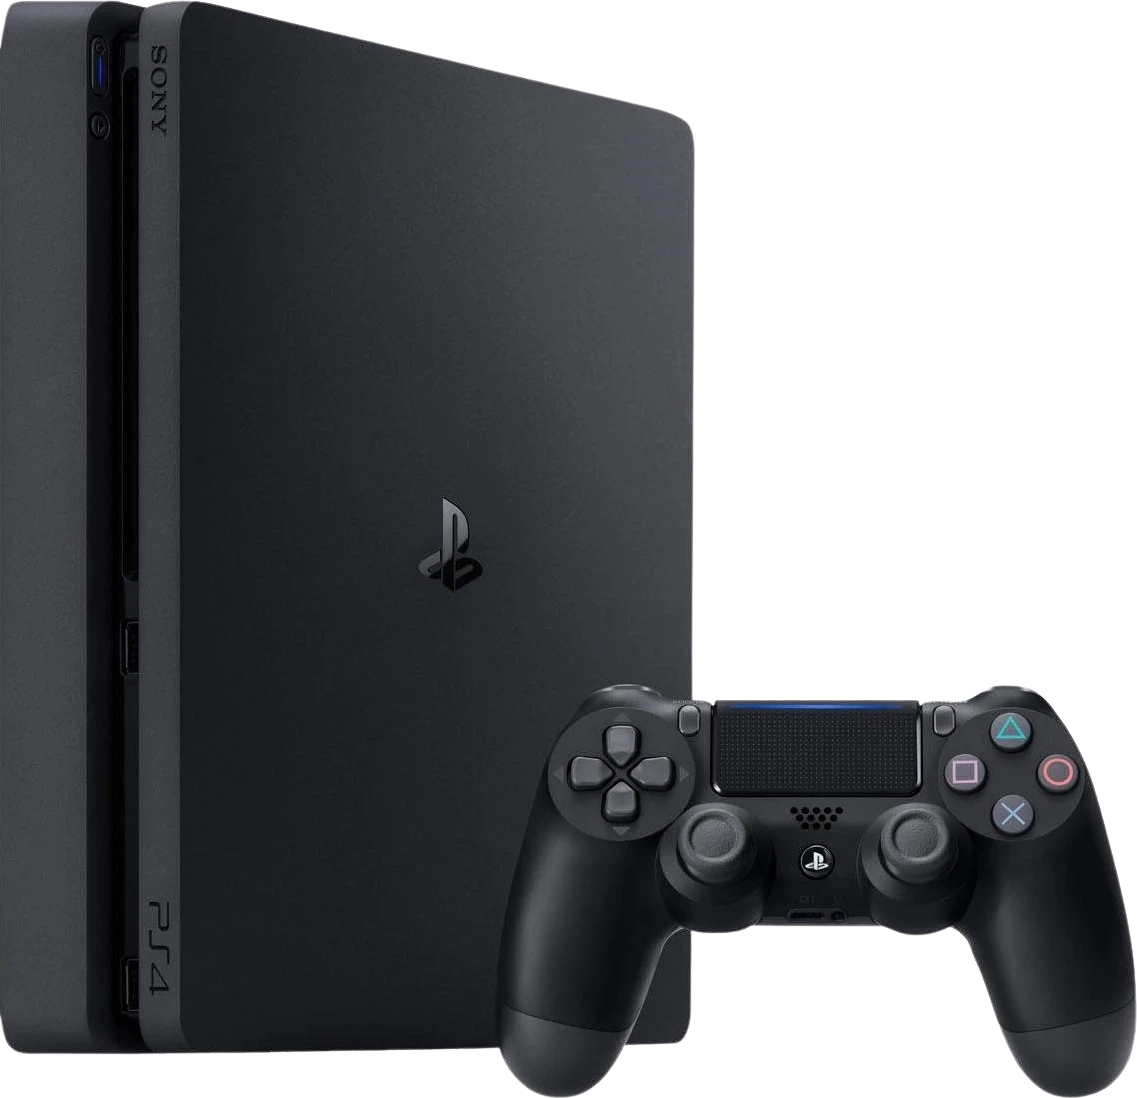 PlayStation 4 slim